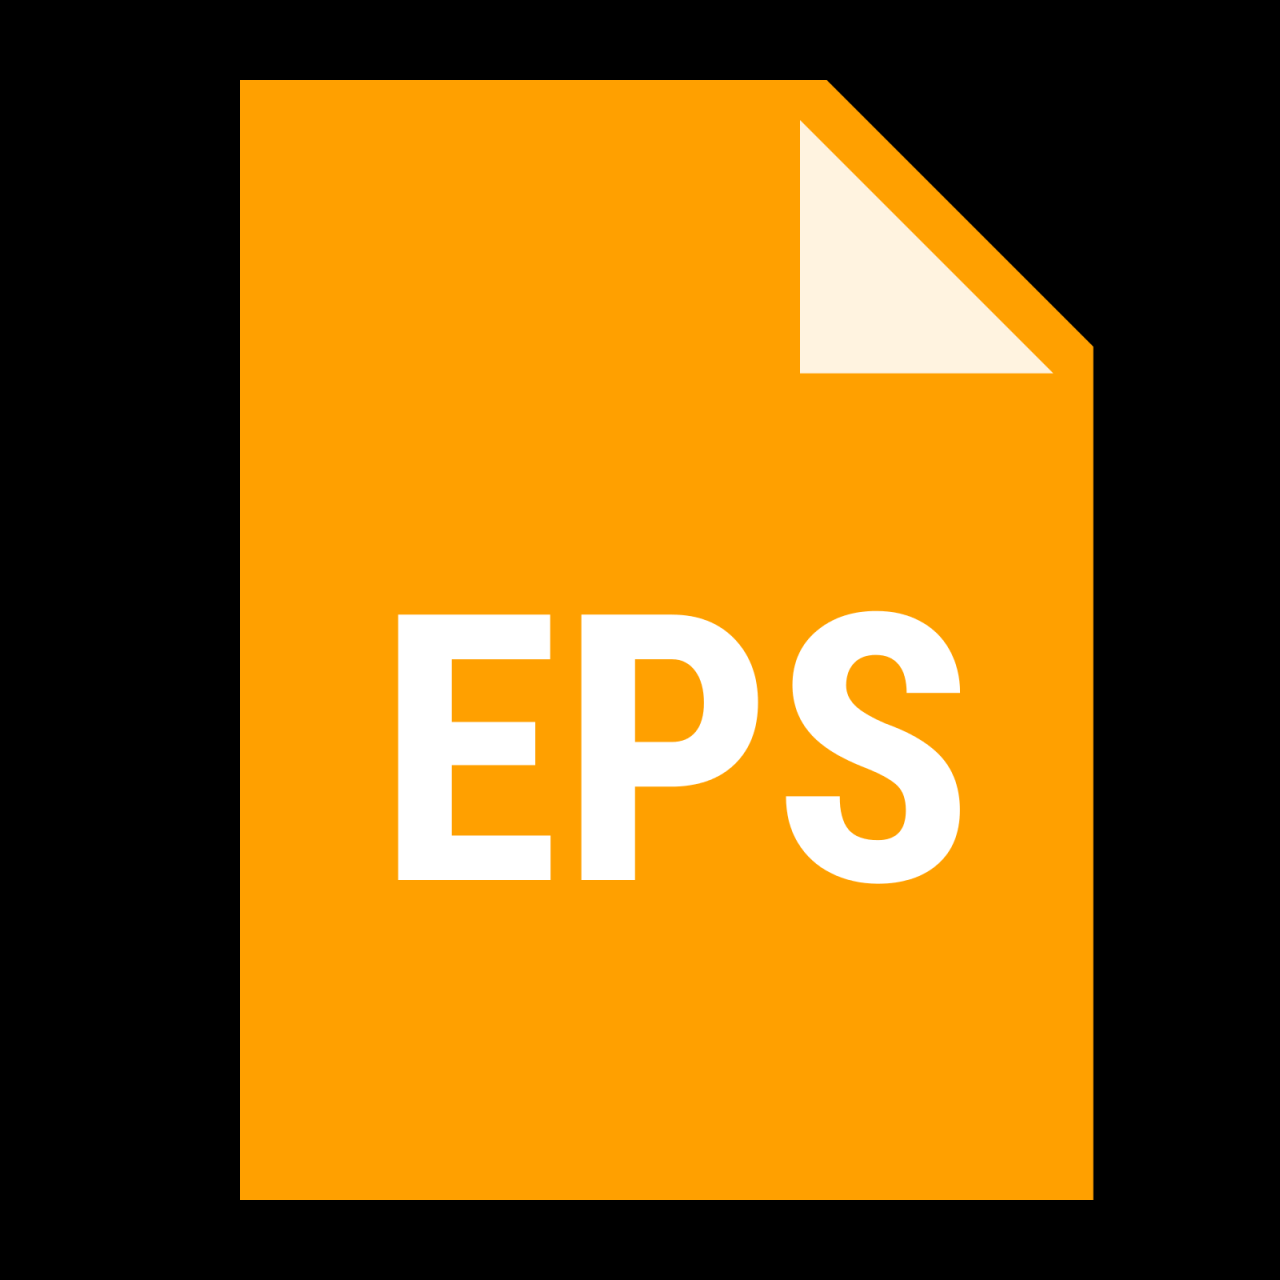 File EPS là gì?